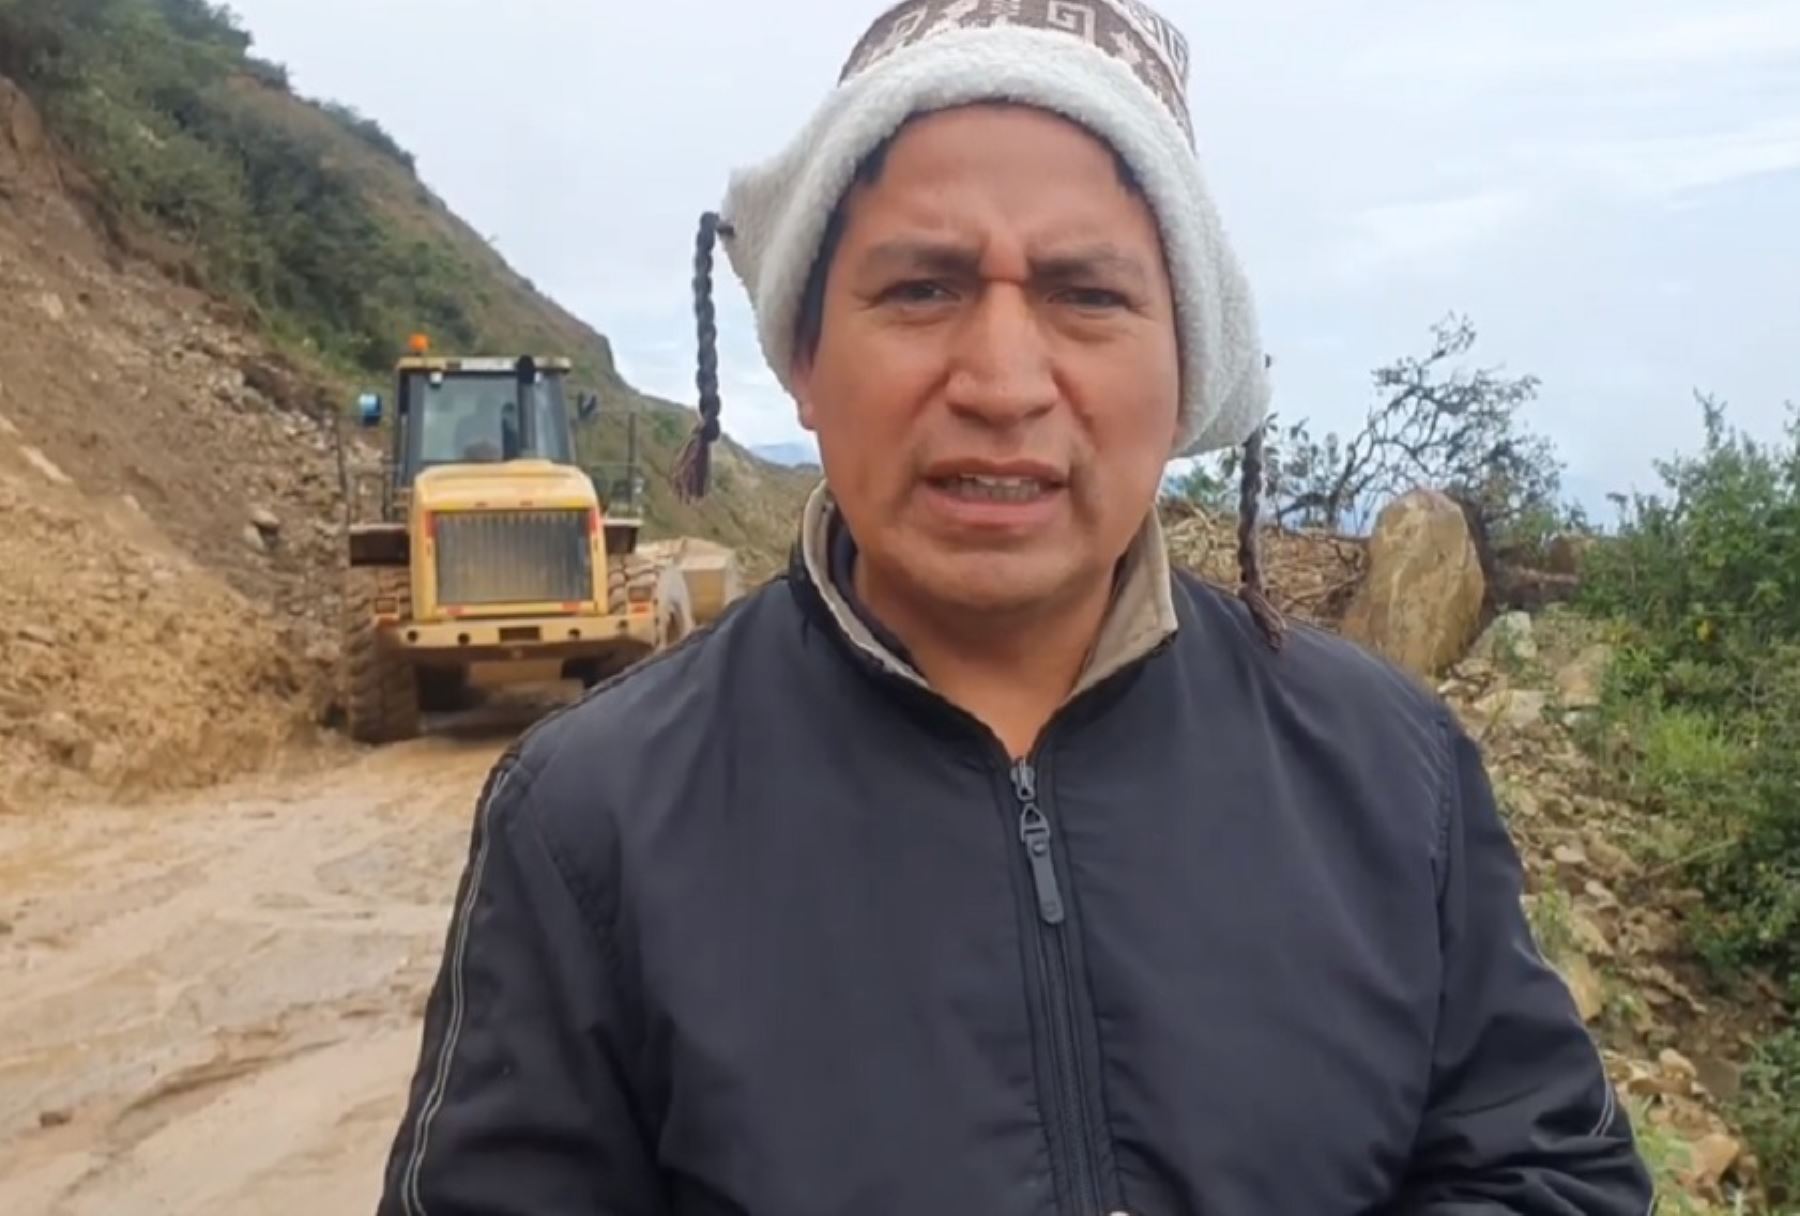 Alrededor de 70,000 habitantes de la provincia de Huamcabamba se encuentran aislados tras un gran derrumbe registrado en la carretera Canchaque-Huancabamba, que conecta con la ciudad de Piura, debido a las intensas lluvias que se registran en el norte del país, informó el alcalde Hernán Lizana Campos.